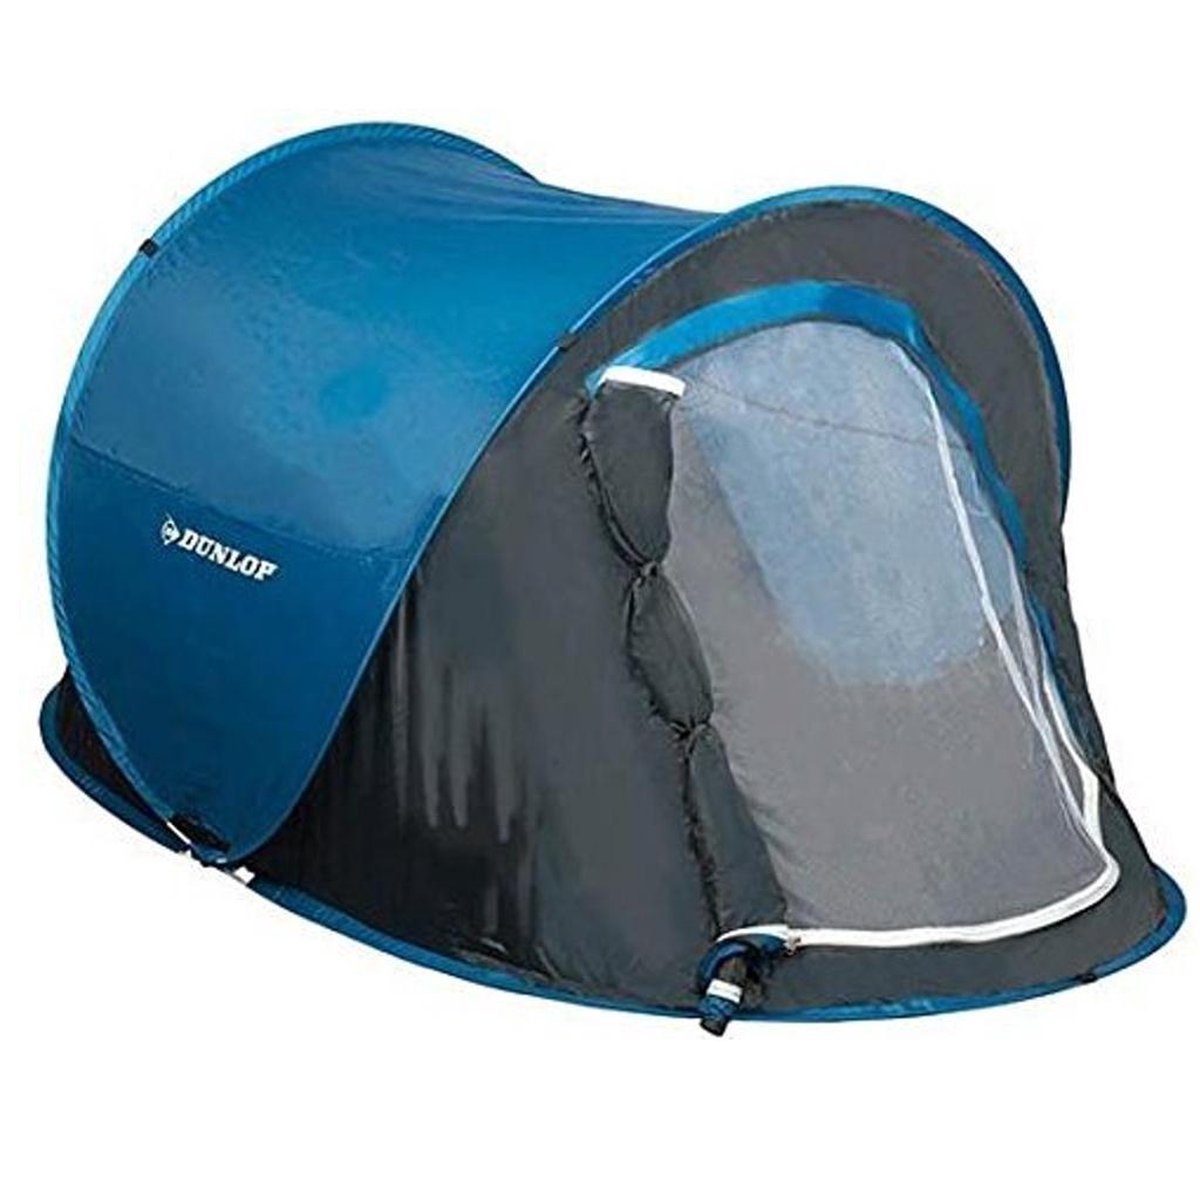 in de buurt Bekentenis Authenticatie Dunlop Pop Up Tent - Blauw/ Grijs/ Wit - 2 Persoons | bol.com